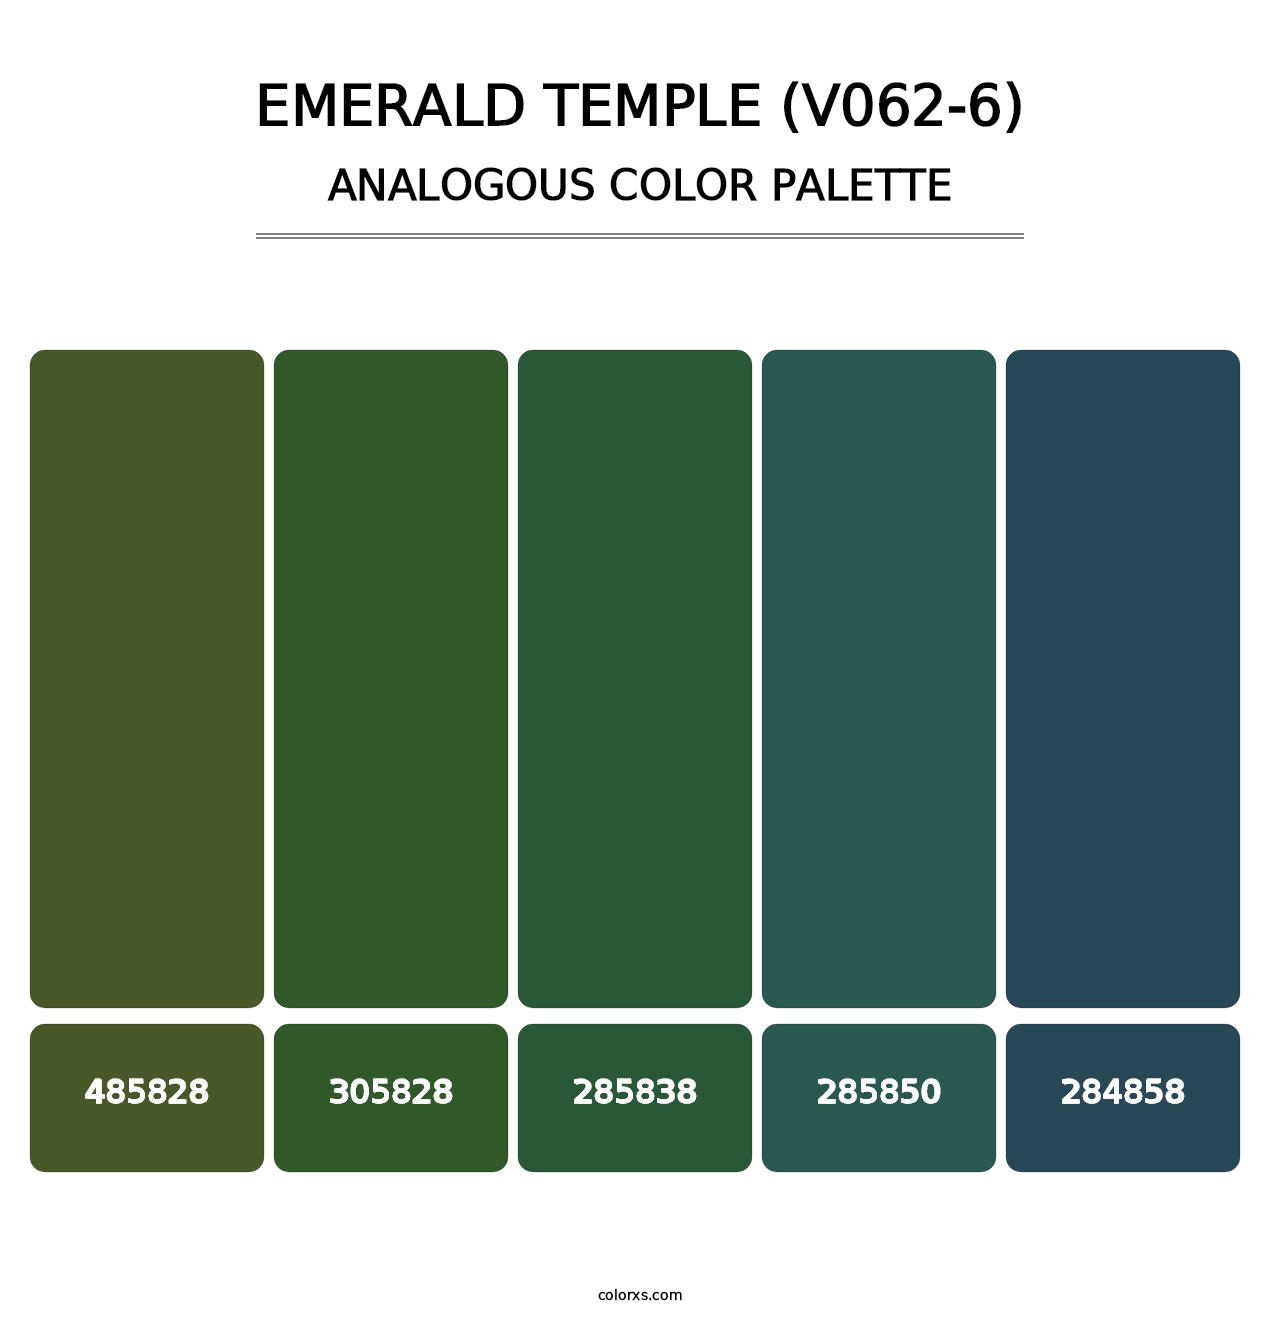 Emerald Temple (V062-6) - Analogous Color Palette